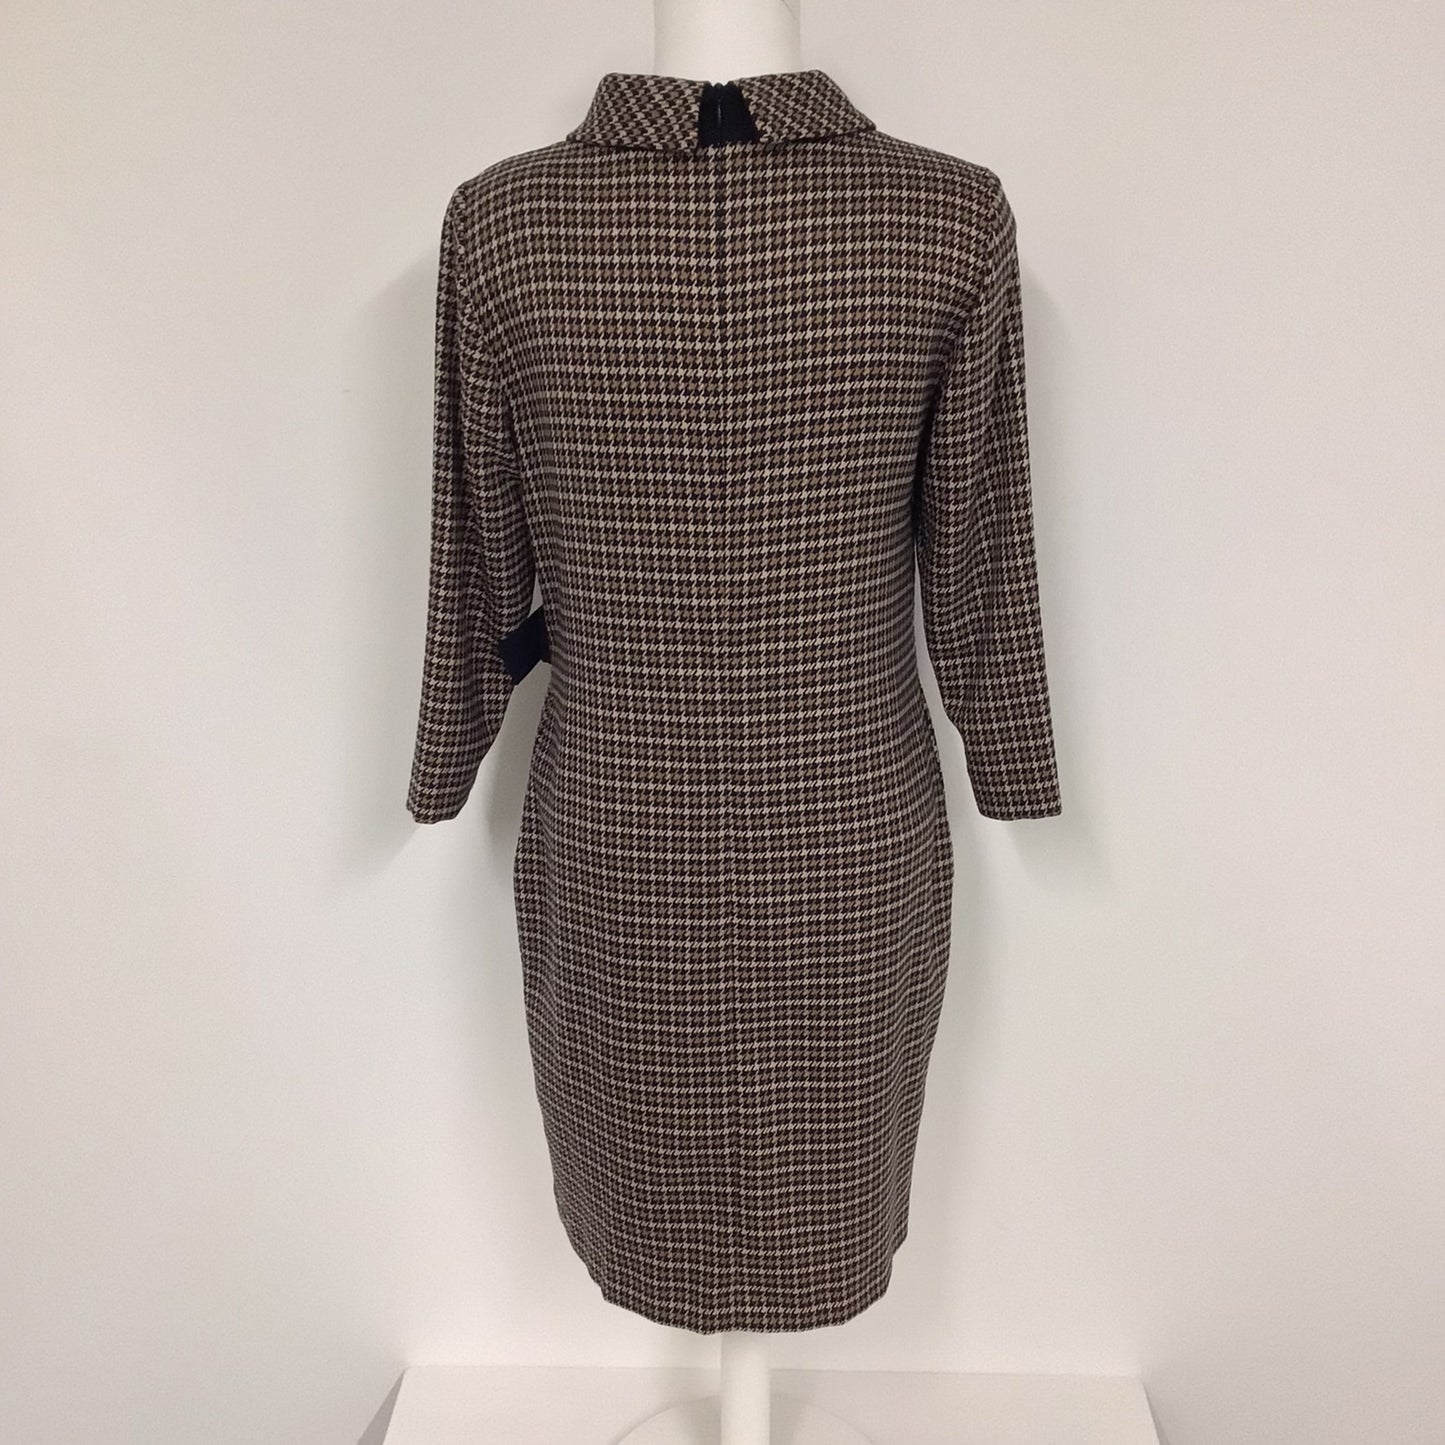 BNWT Solar Brown Sukienka Dogtooth Print Dress w/Pockets Size 8